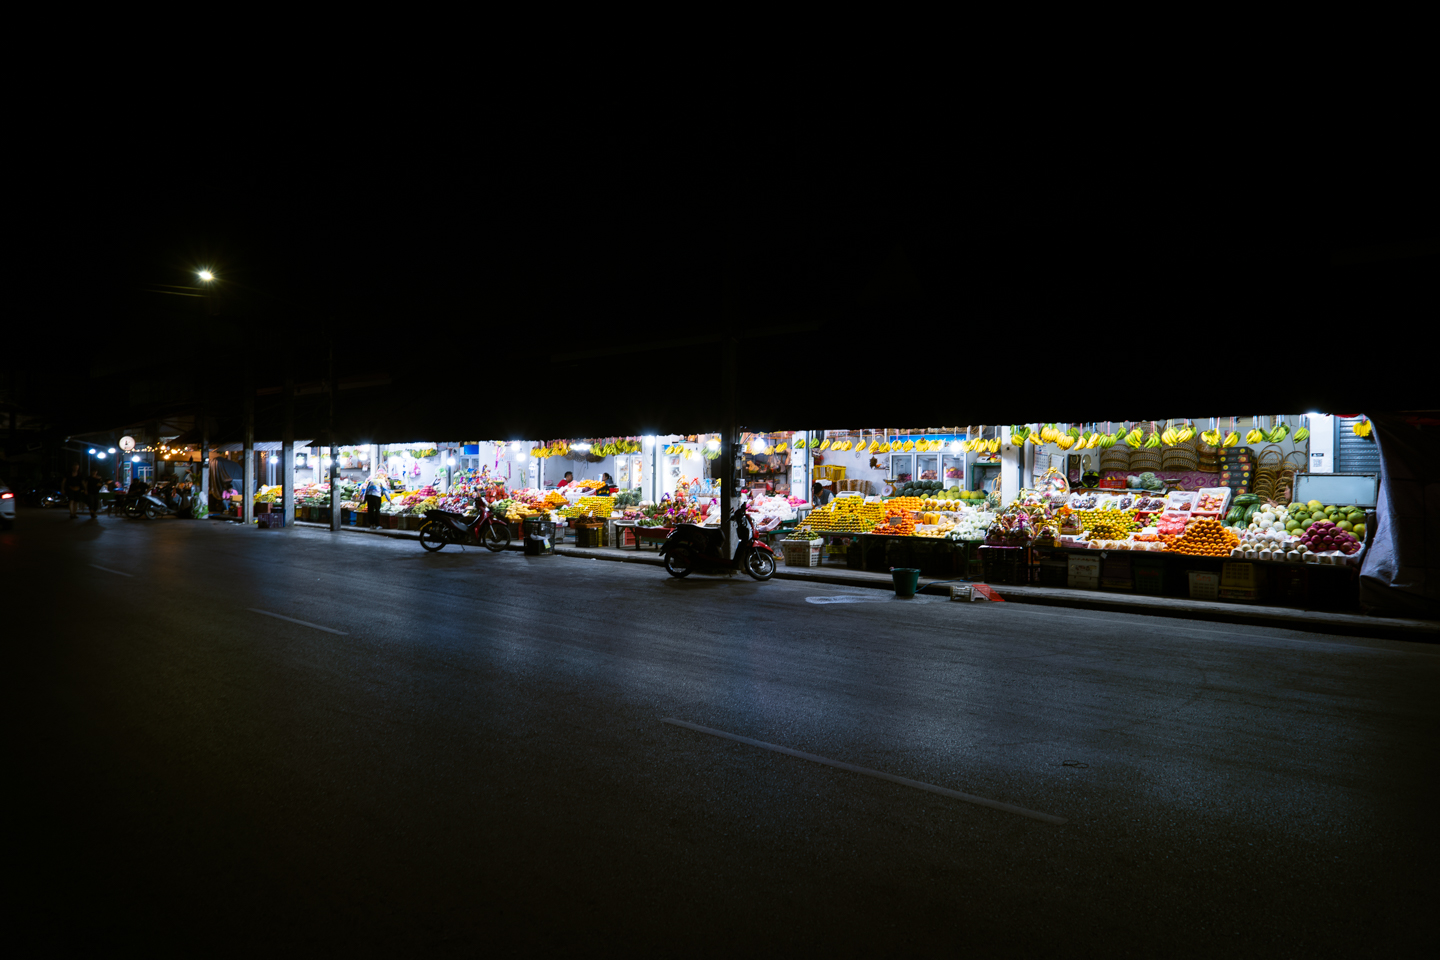 Chiang raï marché nocturne